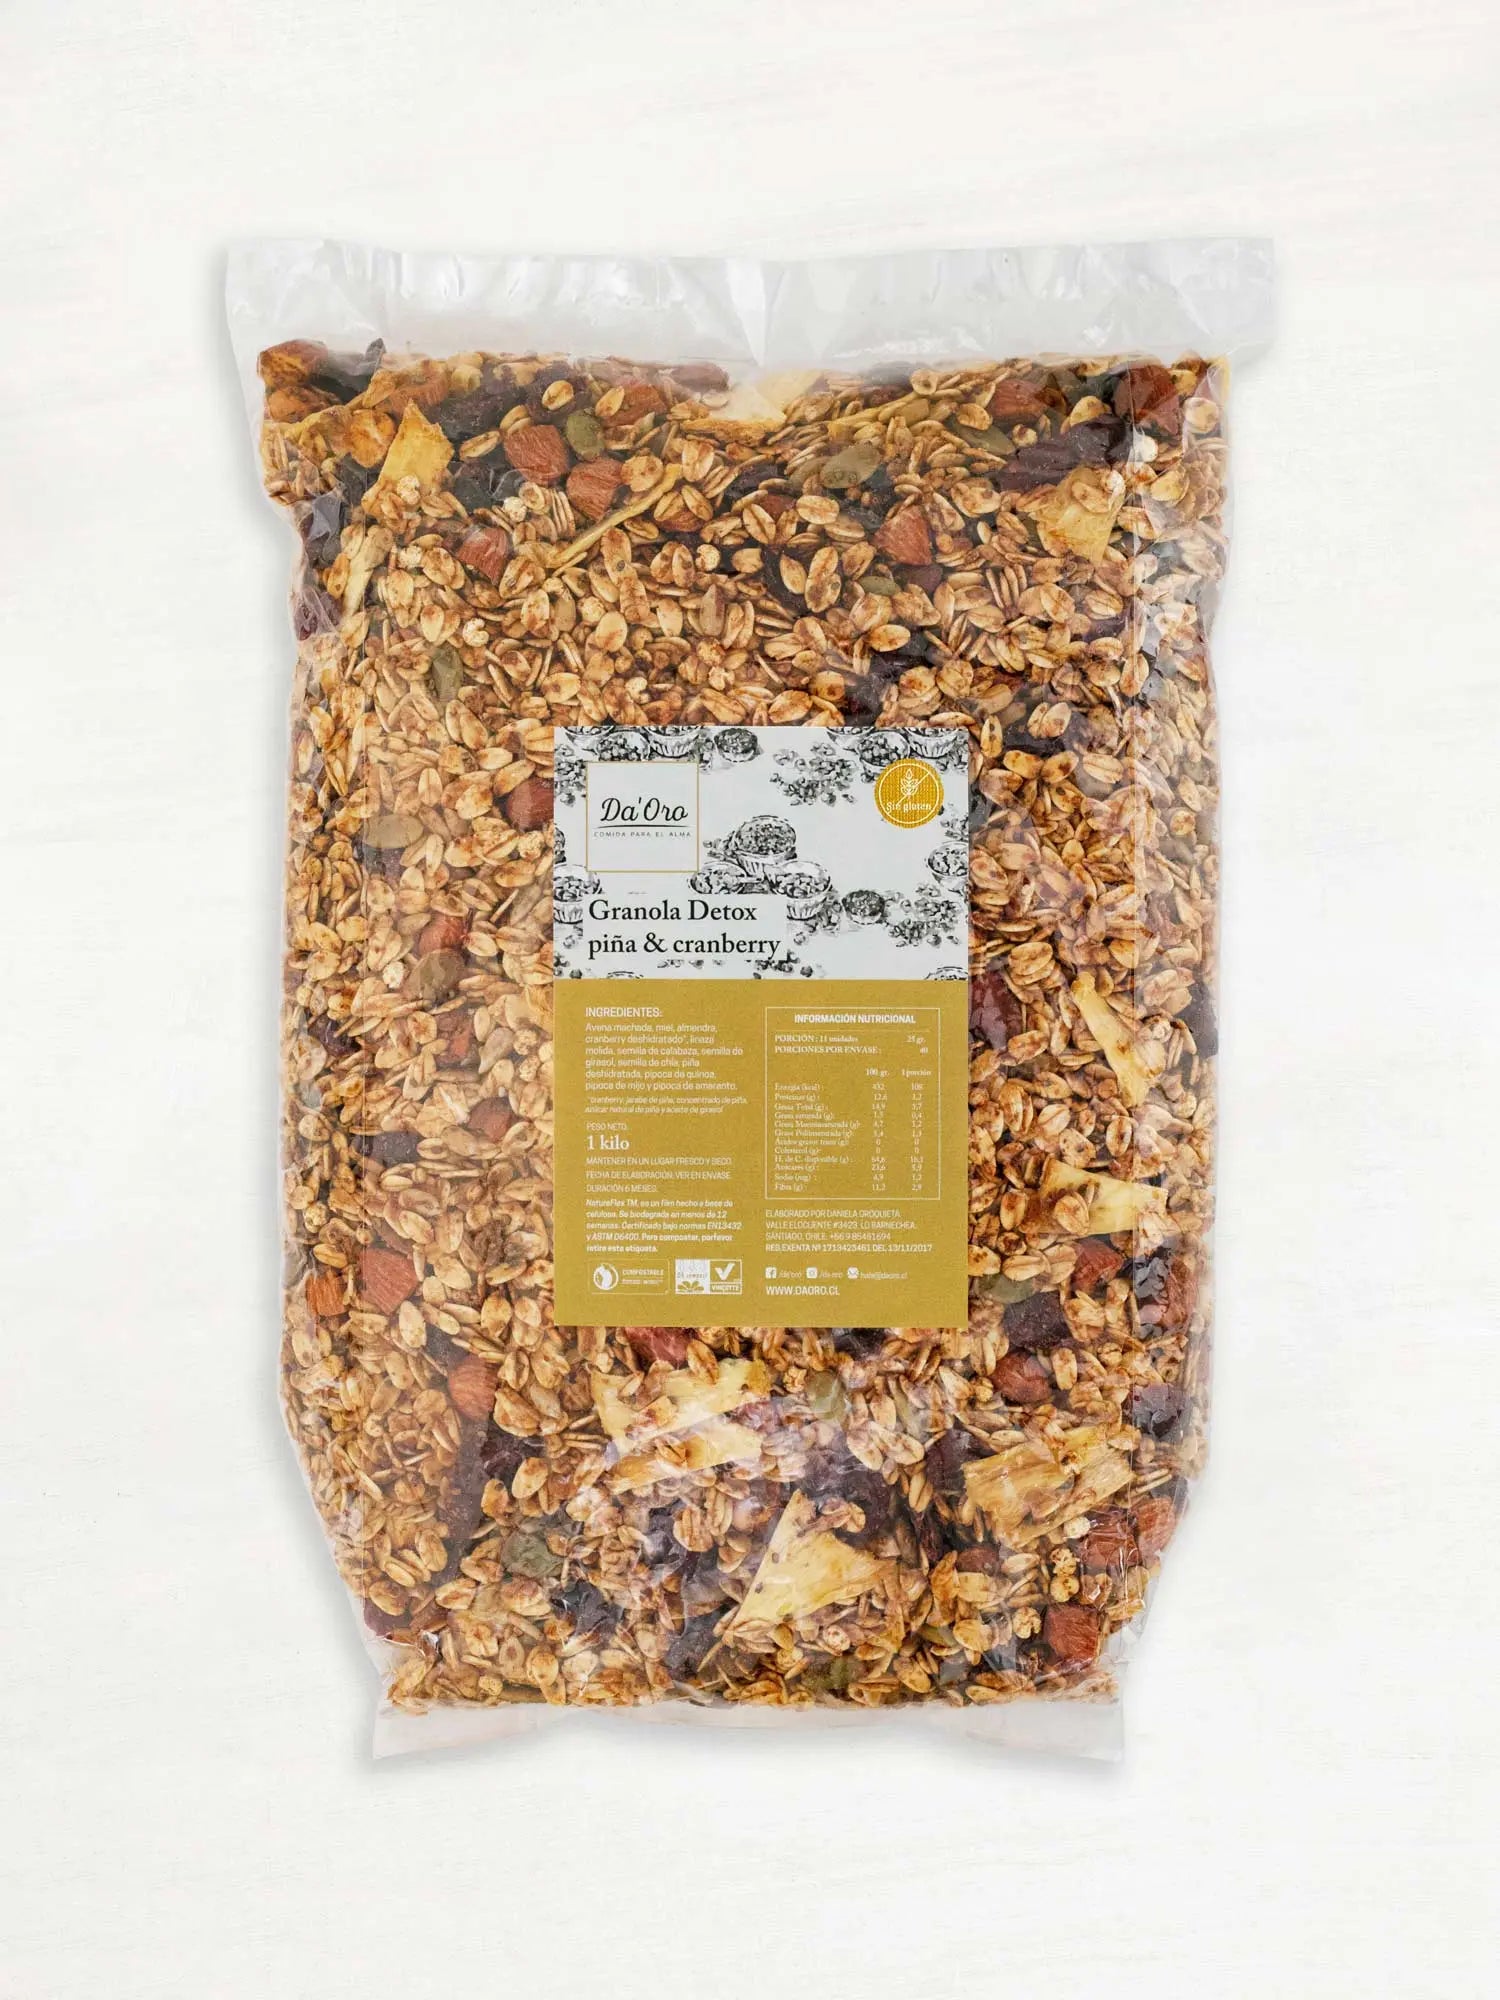 Bolsa de granola sin gluten detox piña 1 kilo marca Da’Oro